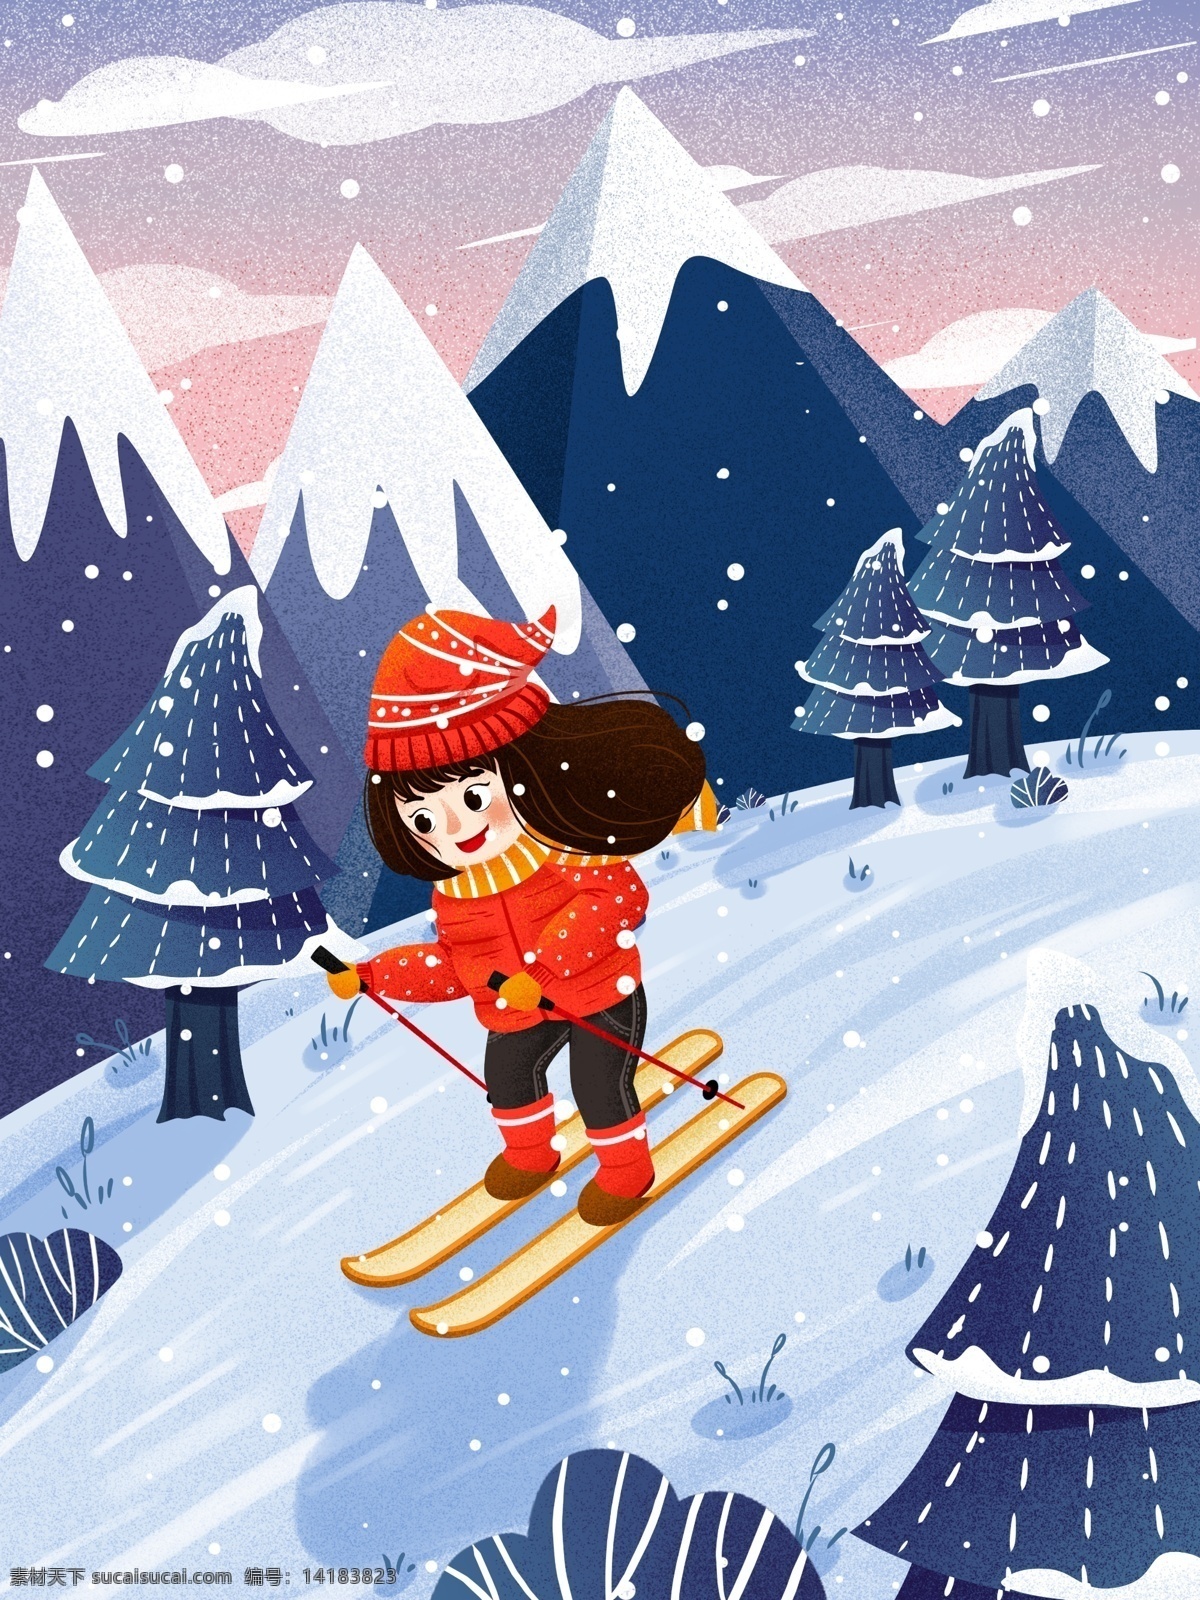 冬季 雪景 女孩 雪地 滑雪 插画 唯美 冬天 冬季插画 滑雪女孩 滑雪人物 滑雪插画 大雪 大雪插画 冬季雪景 下雪 白雪 手绘人物 人物插画 冷色 寒冷 手绘